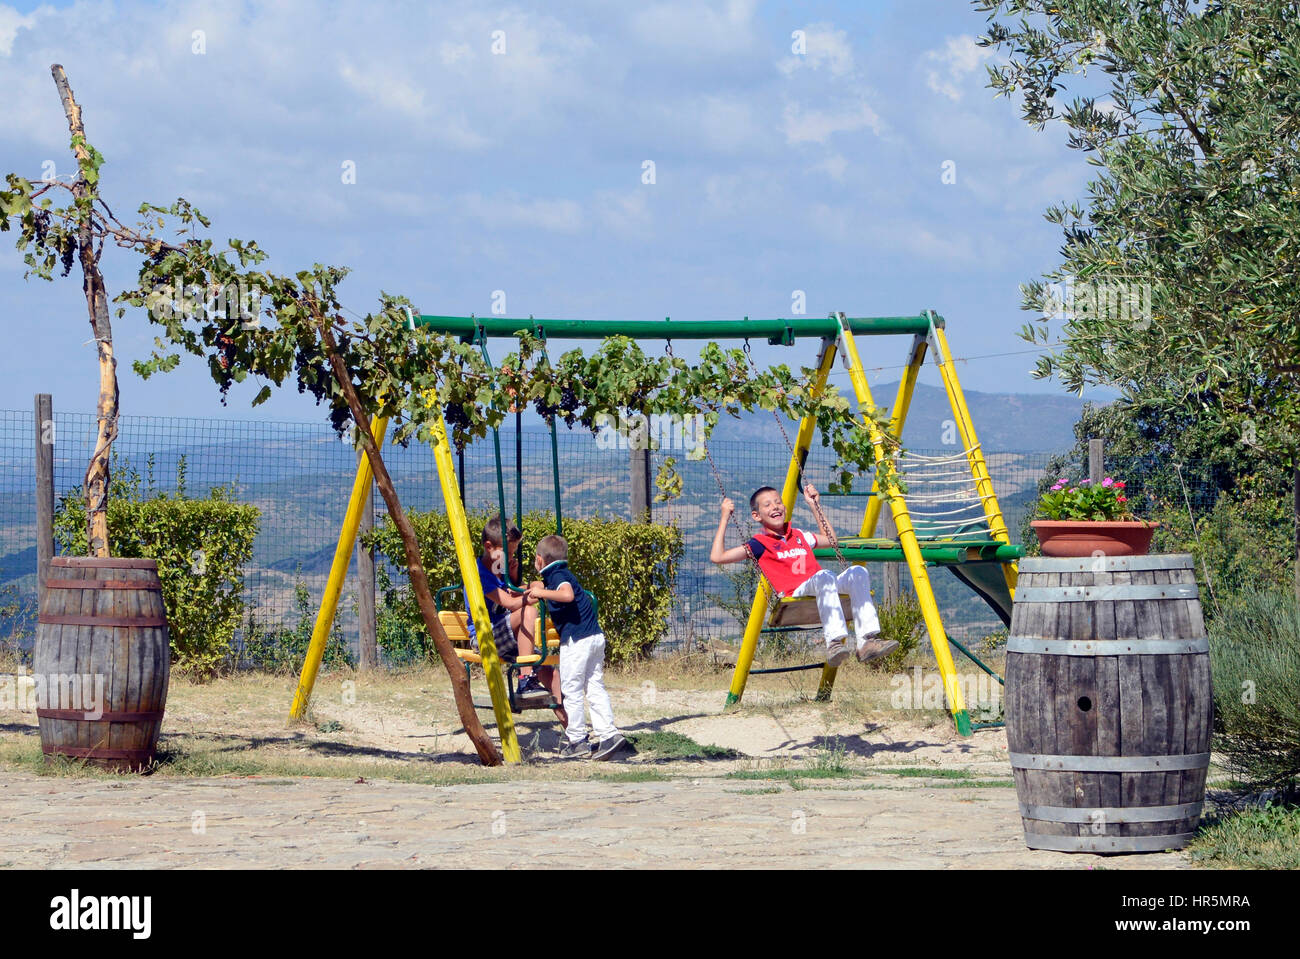 Boy on playground swing, Sardinia, Italy, Europe Stock Photo